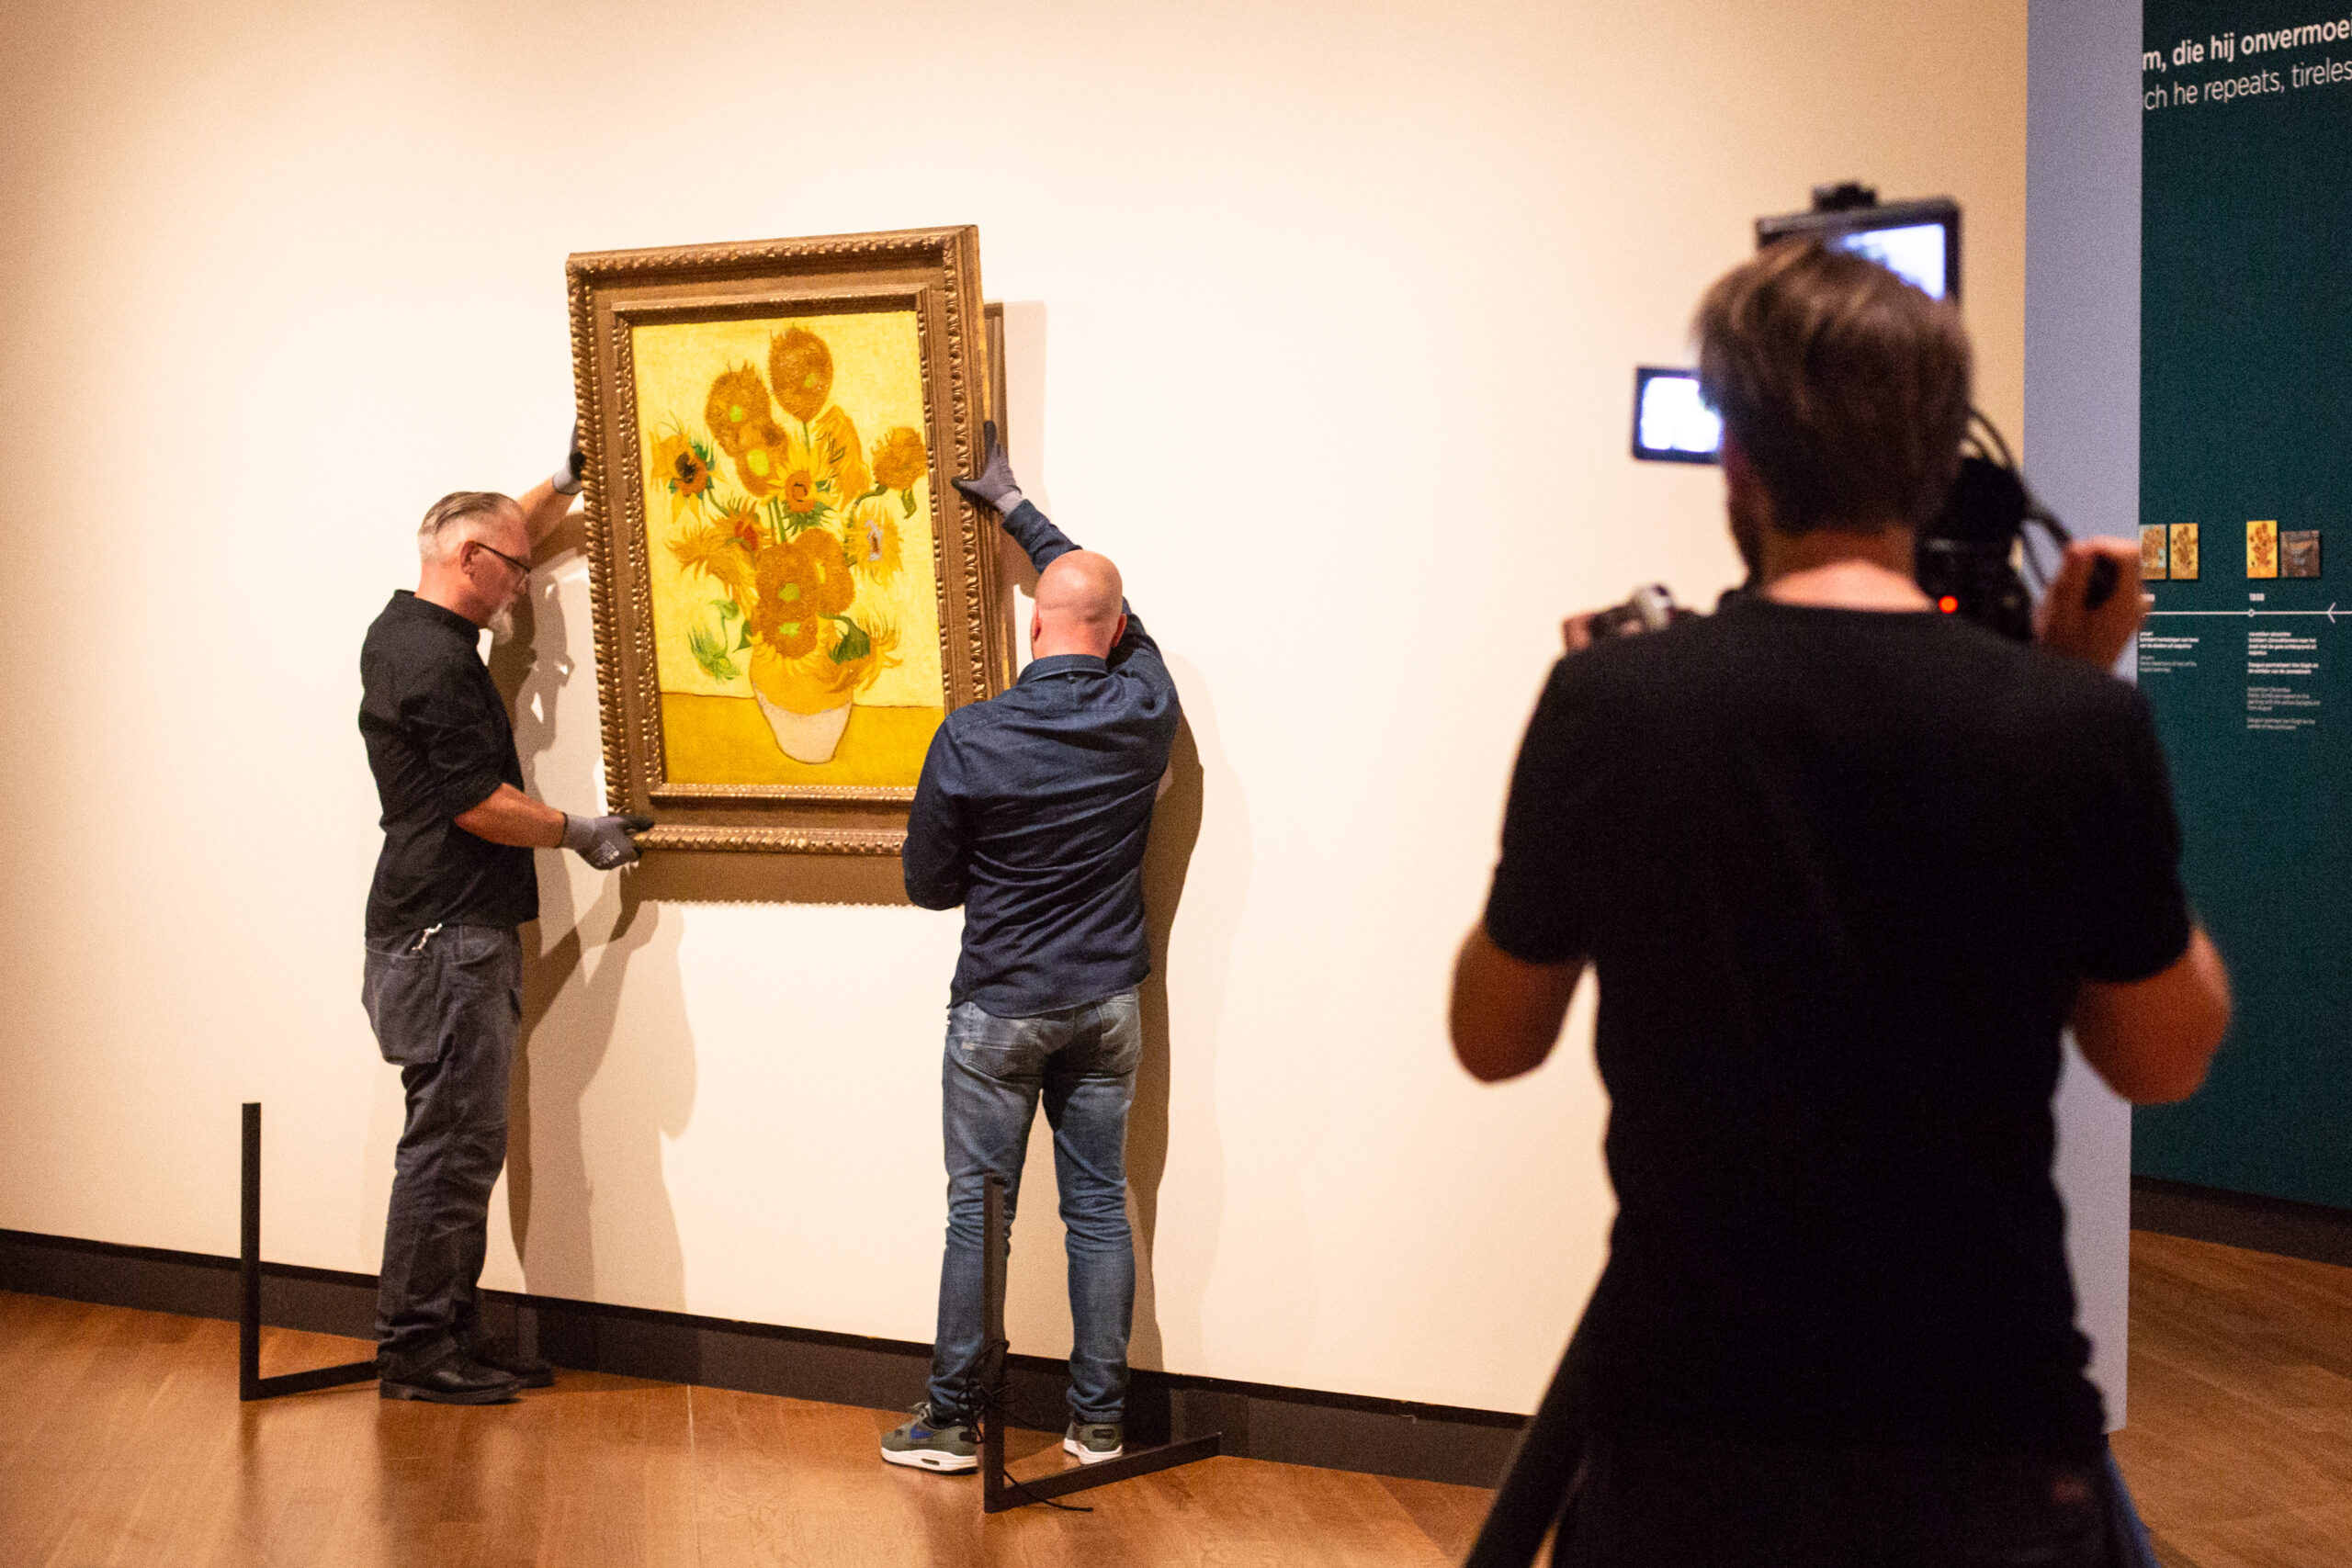 Dopo Frida arriva Van Gogh: a gennaio al cinema il docufilm sul pittore olandese